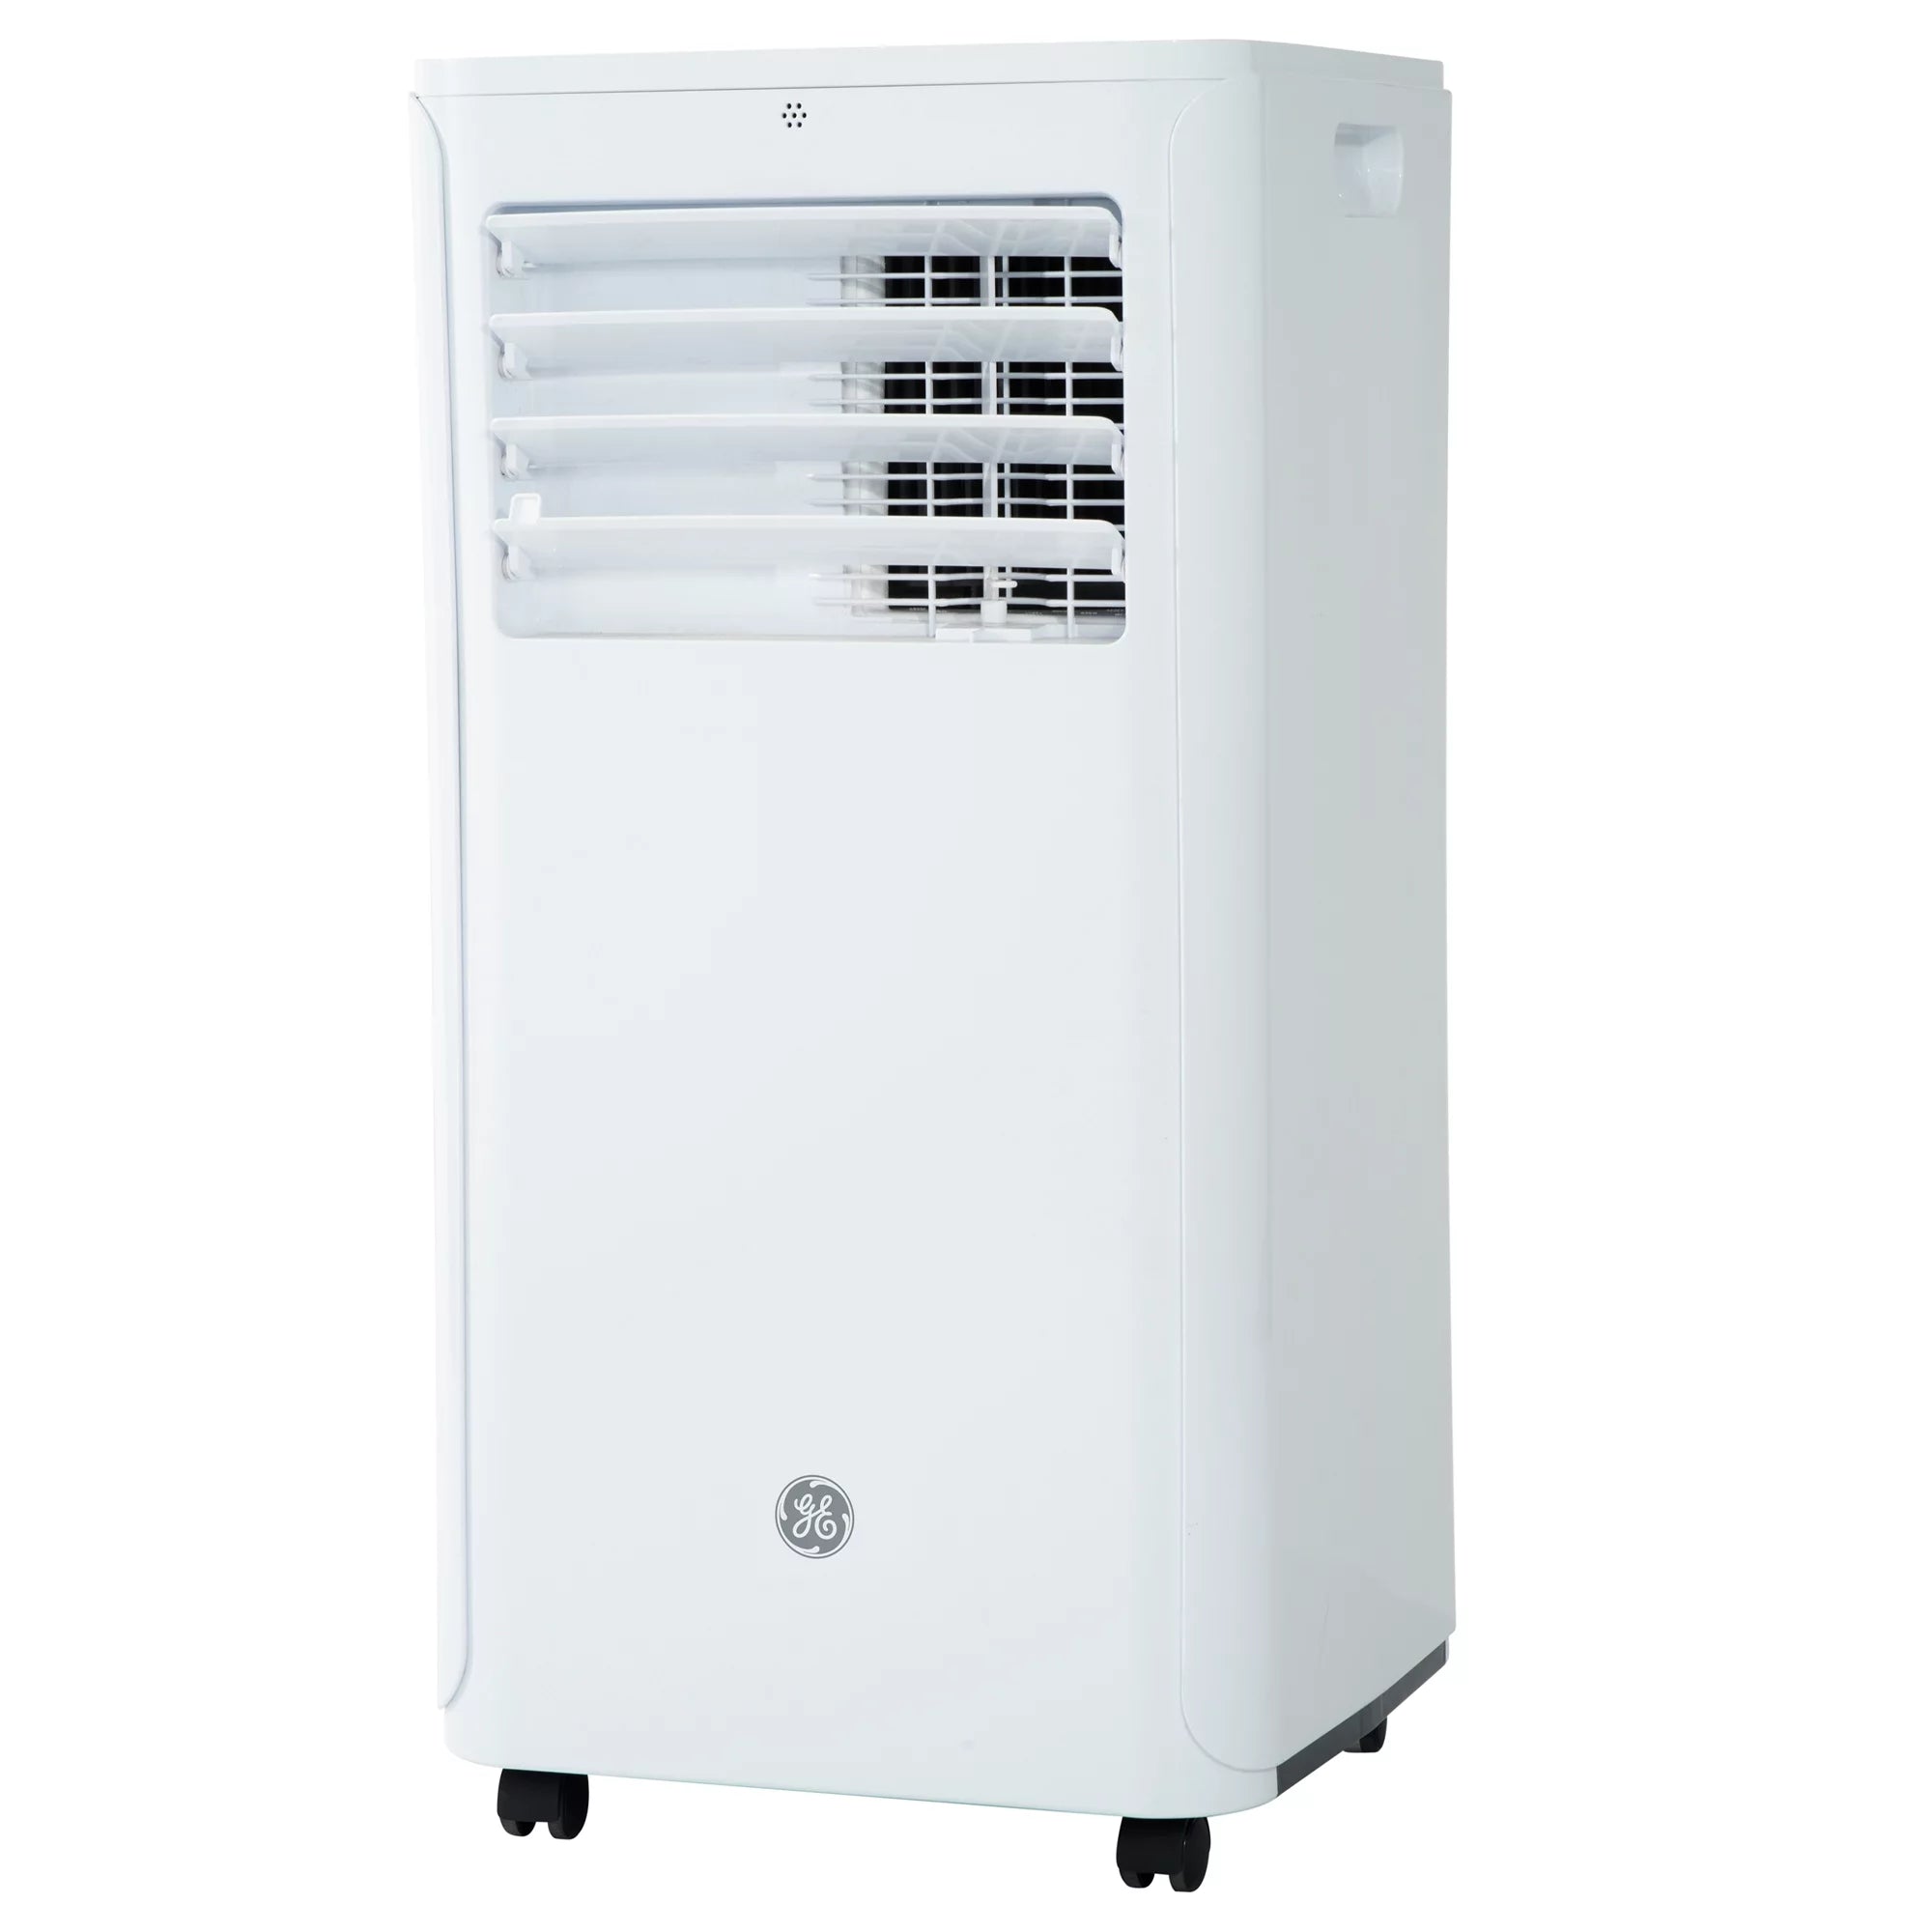 GE 6,100 BTU Portable Air Conditioner